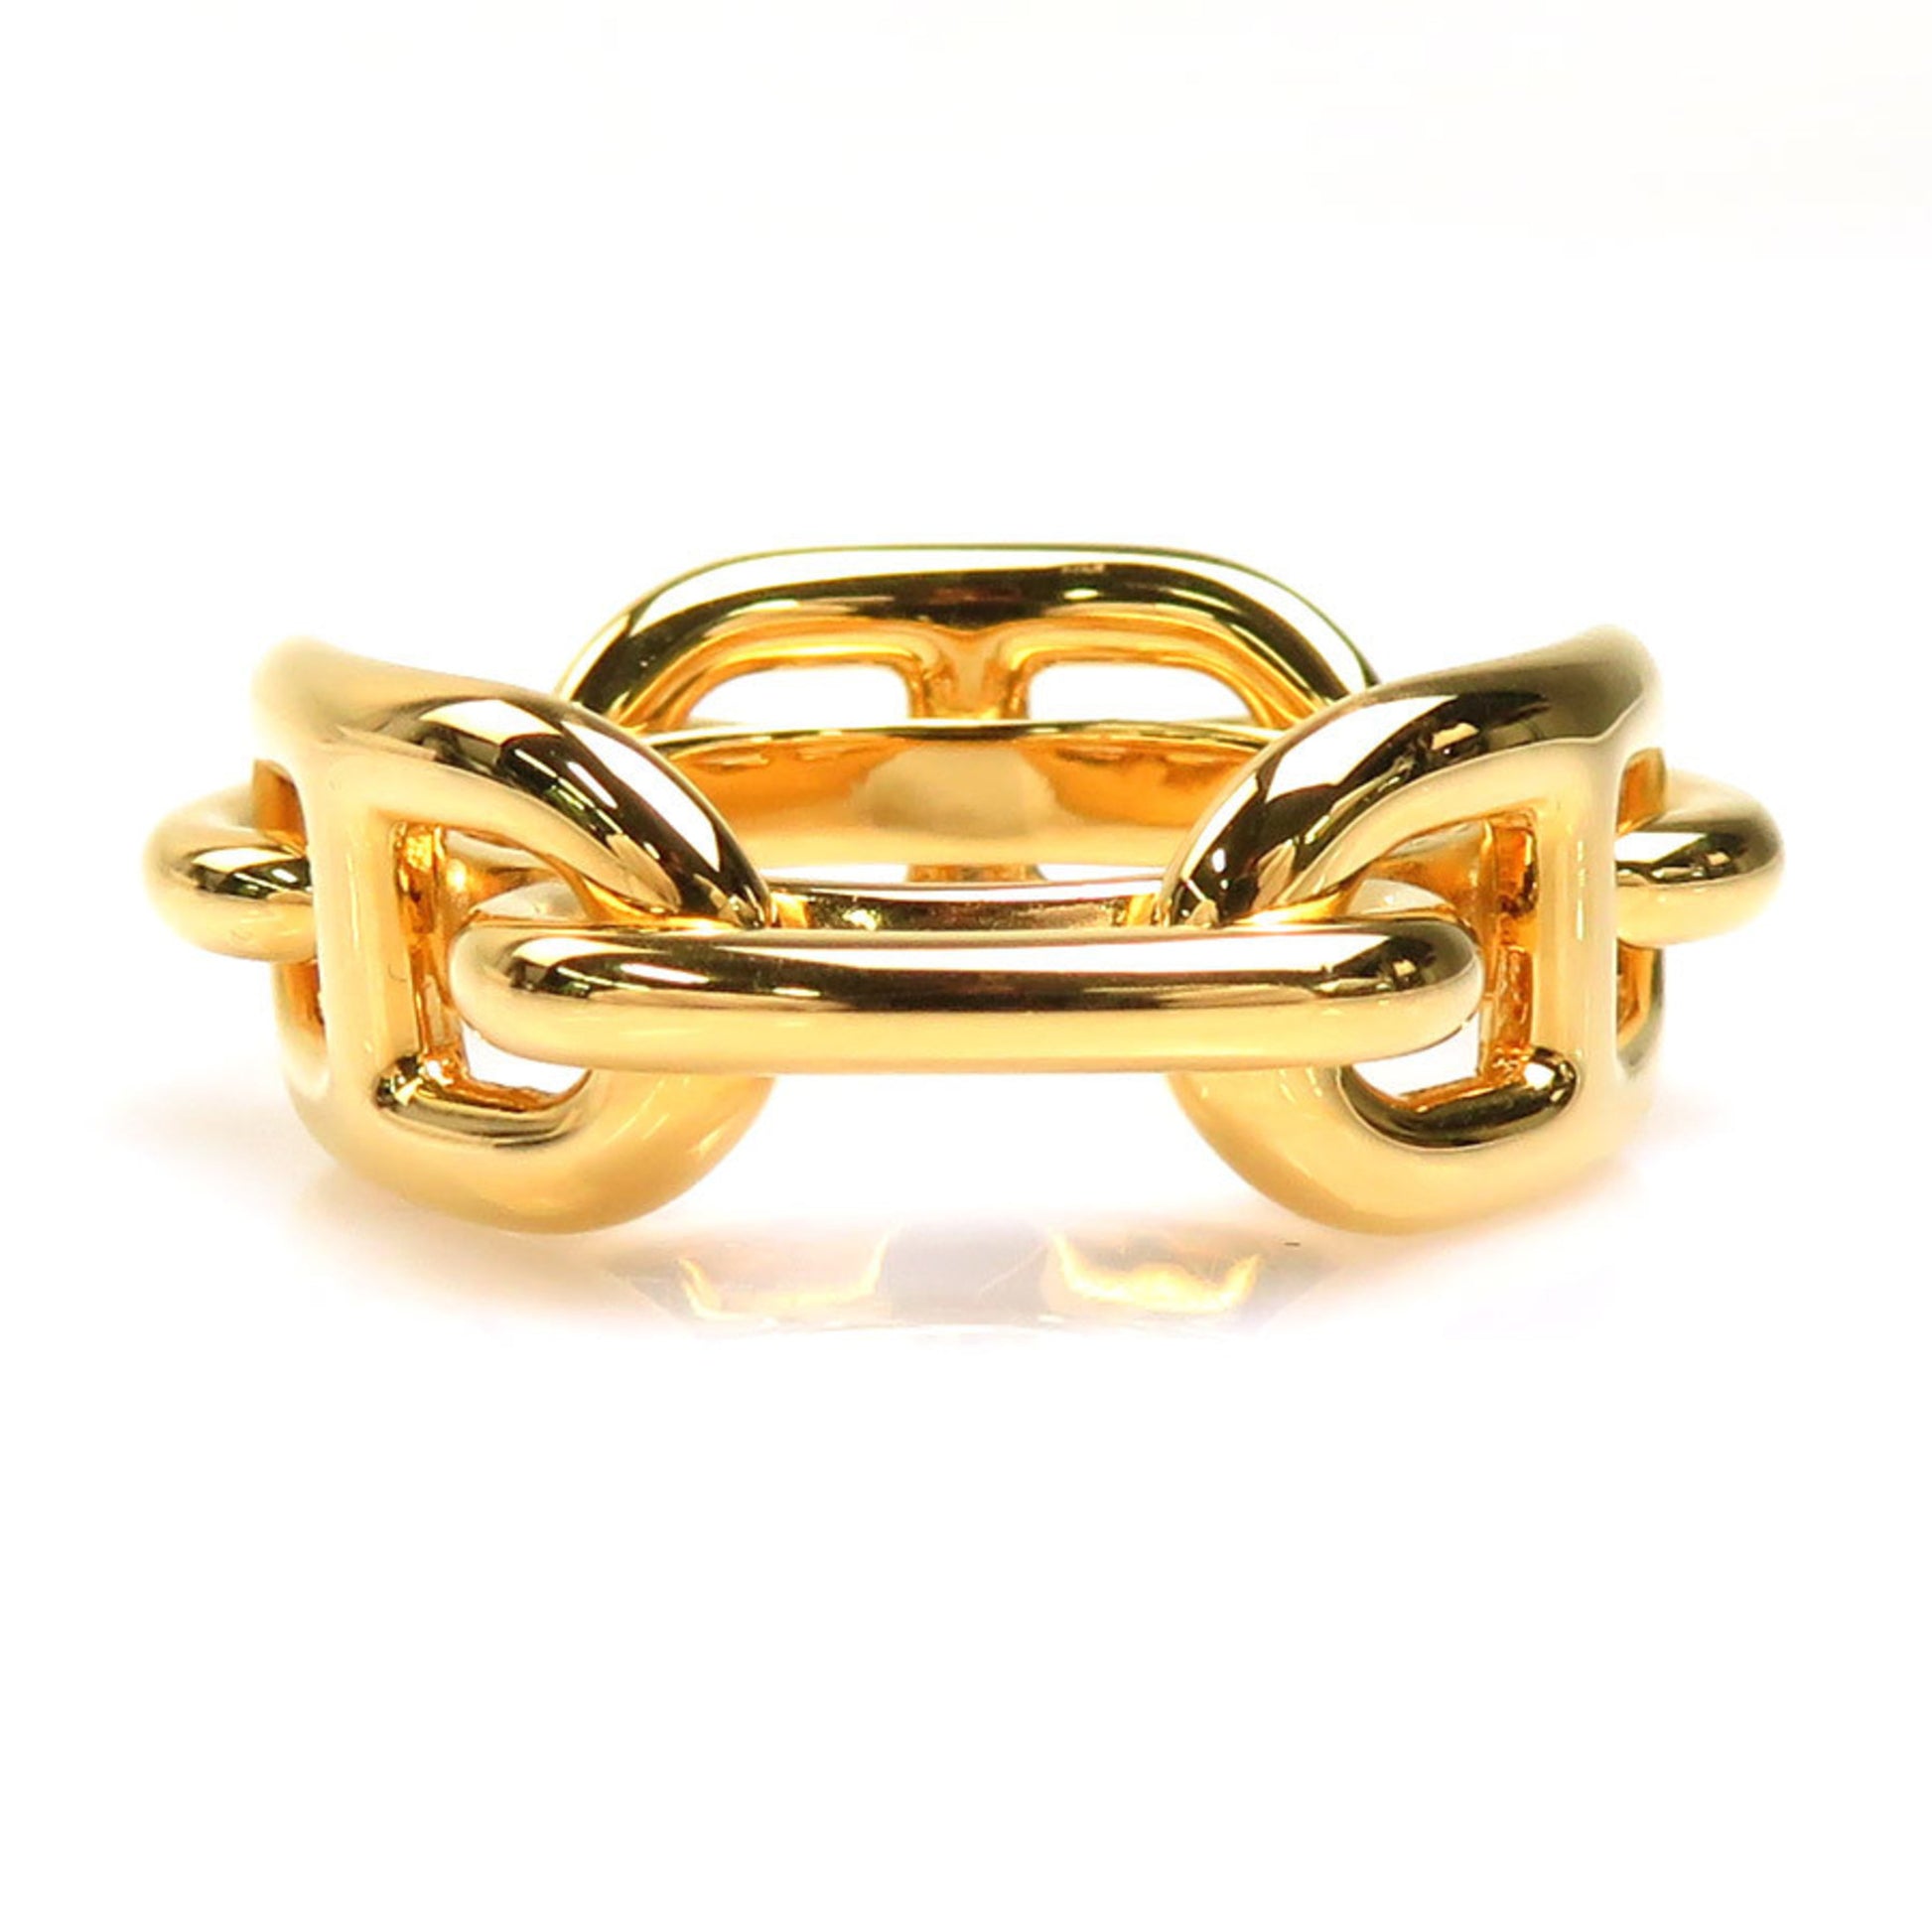 Hermes Scarf Ring shanedankuru Metal Gold Unisex